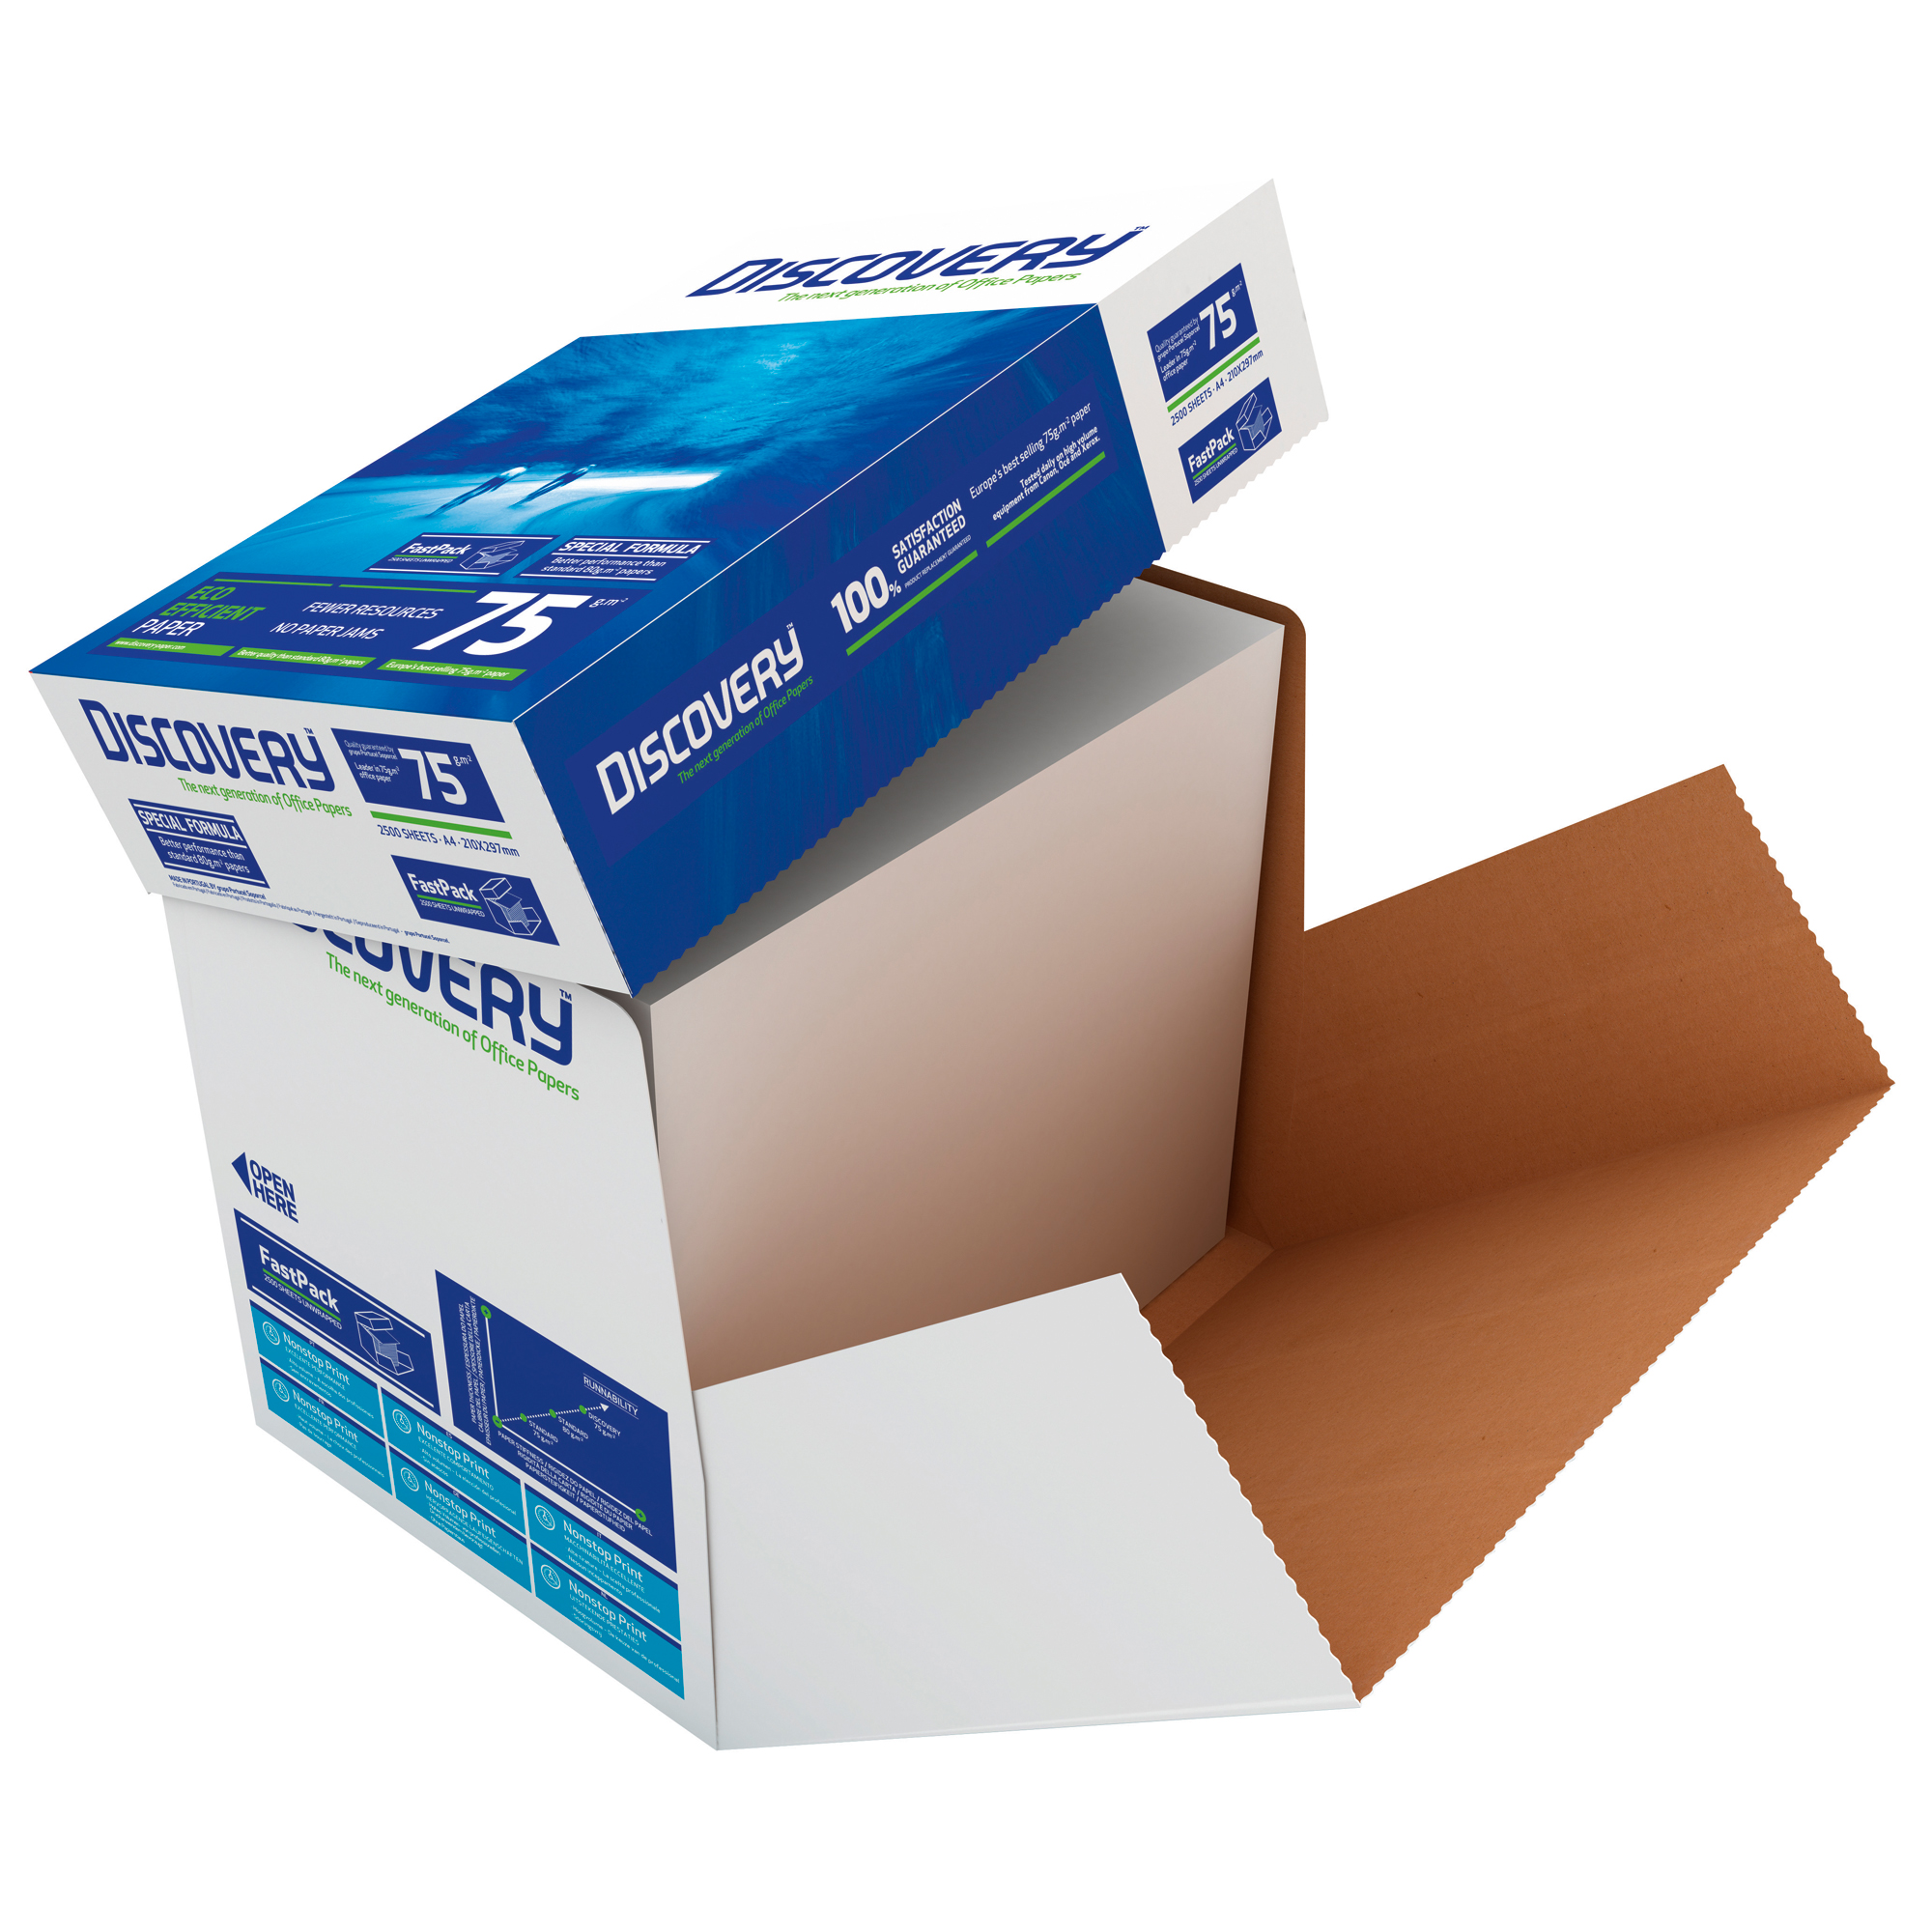 DISCOVERY Kopierpapier 2.500 Bl./Pack. 75g/qm A4 weiß Kopierpapier A4 1 Packung 834270A75S DIN